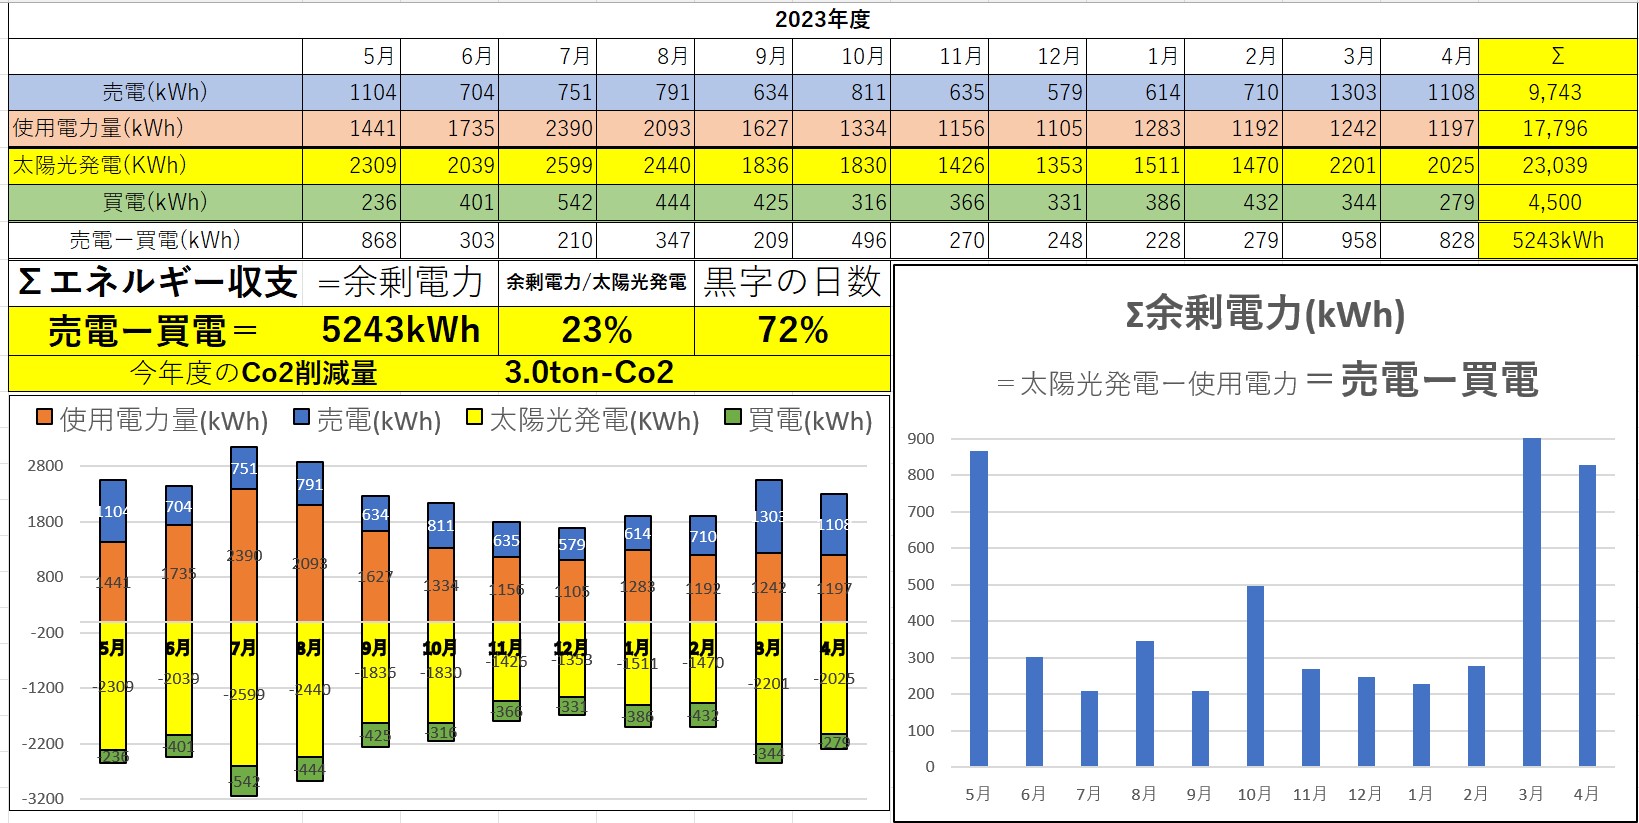 倉沢建設ゼロエネルギービル エネルギー消費データ